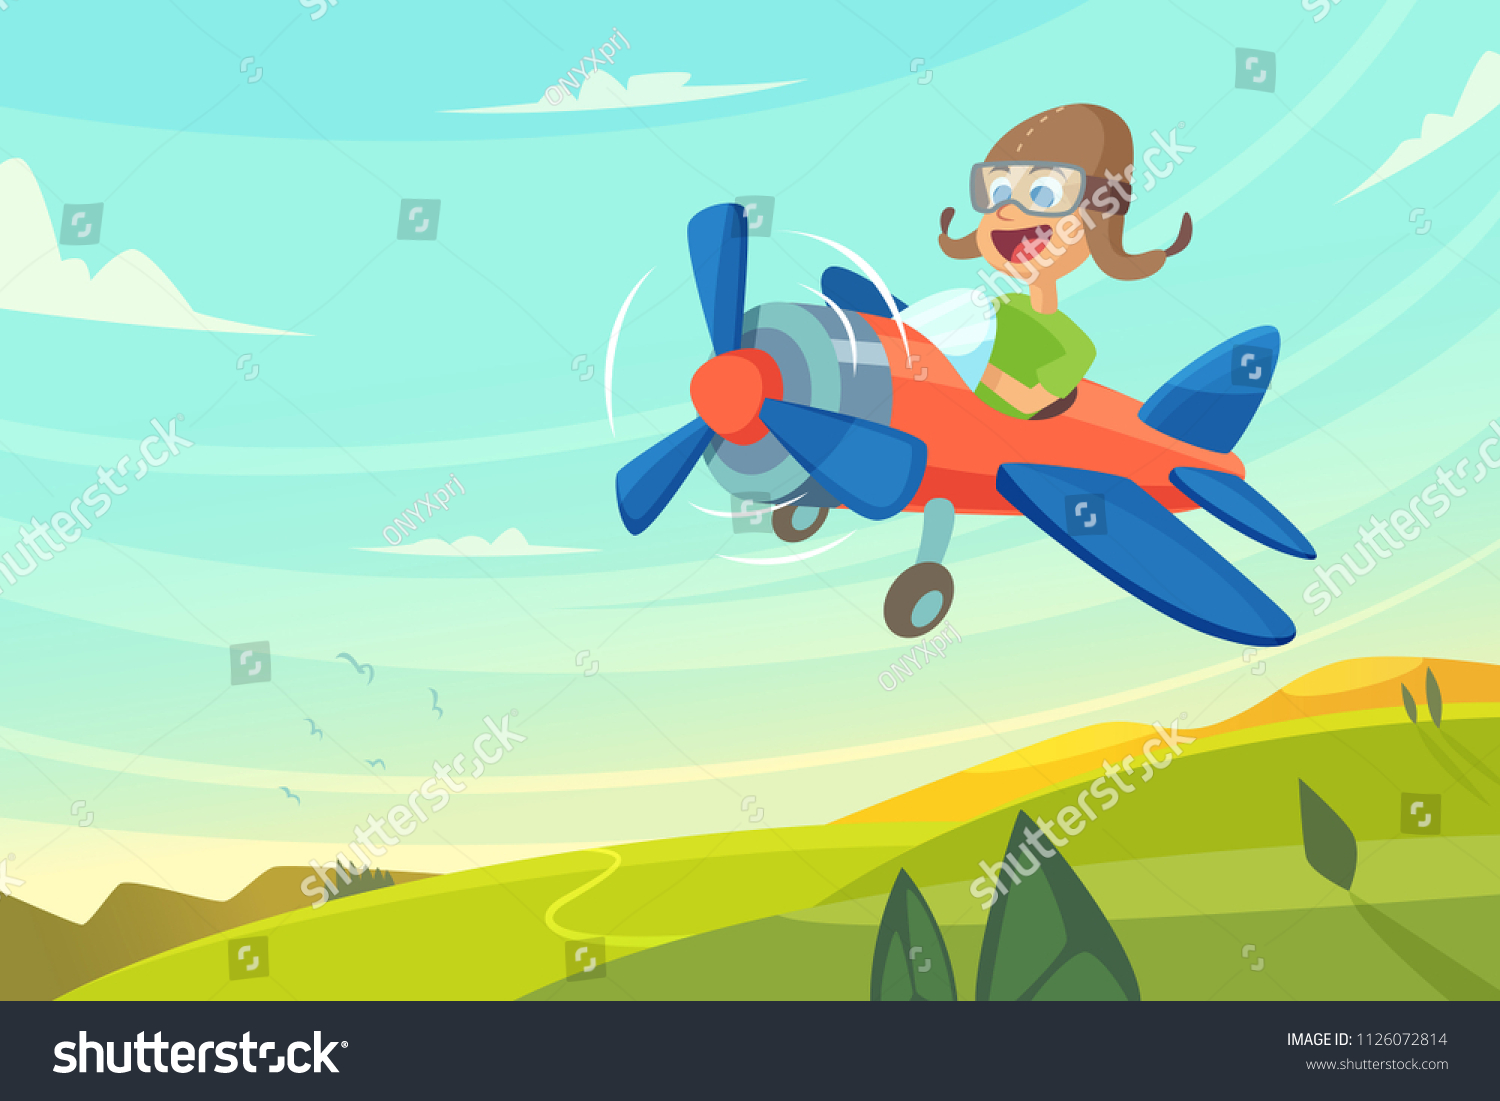 Летчик летает на самолете